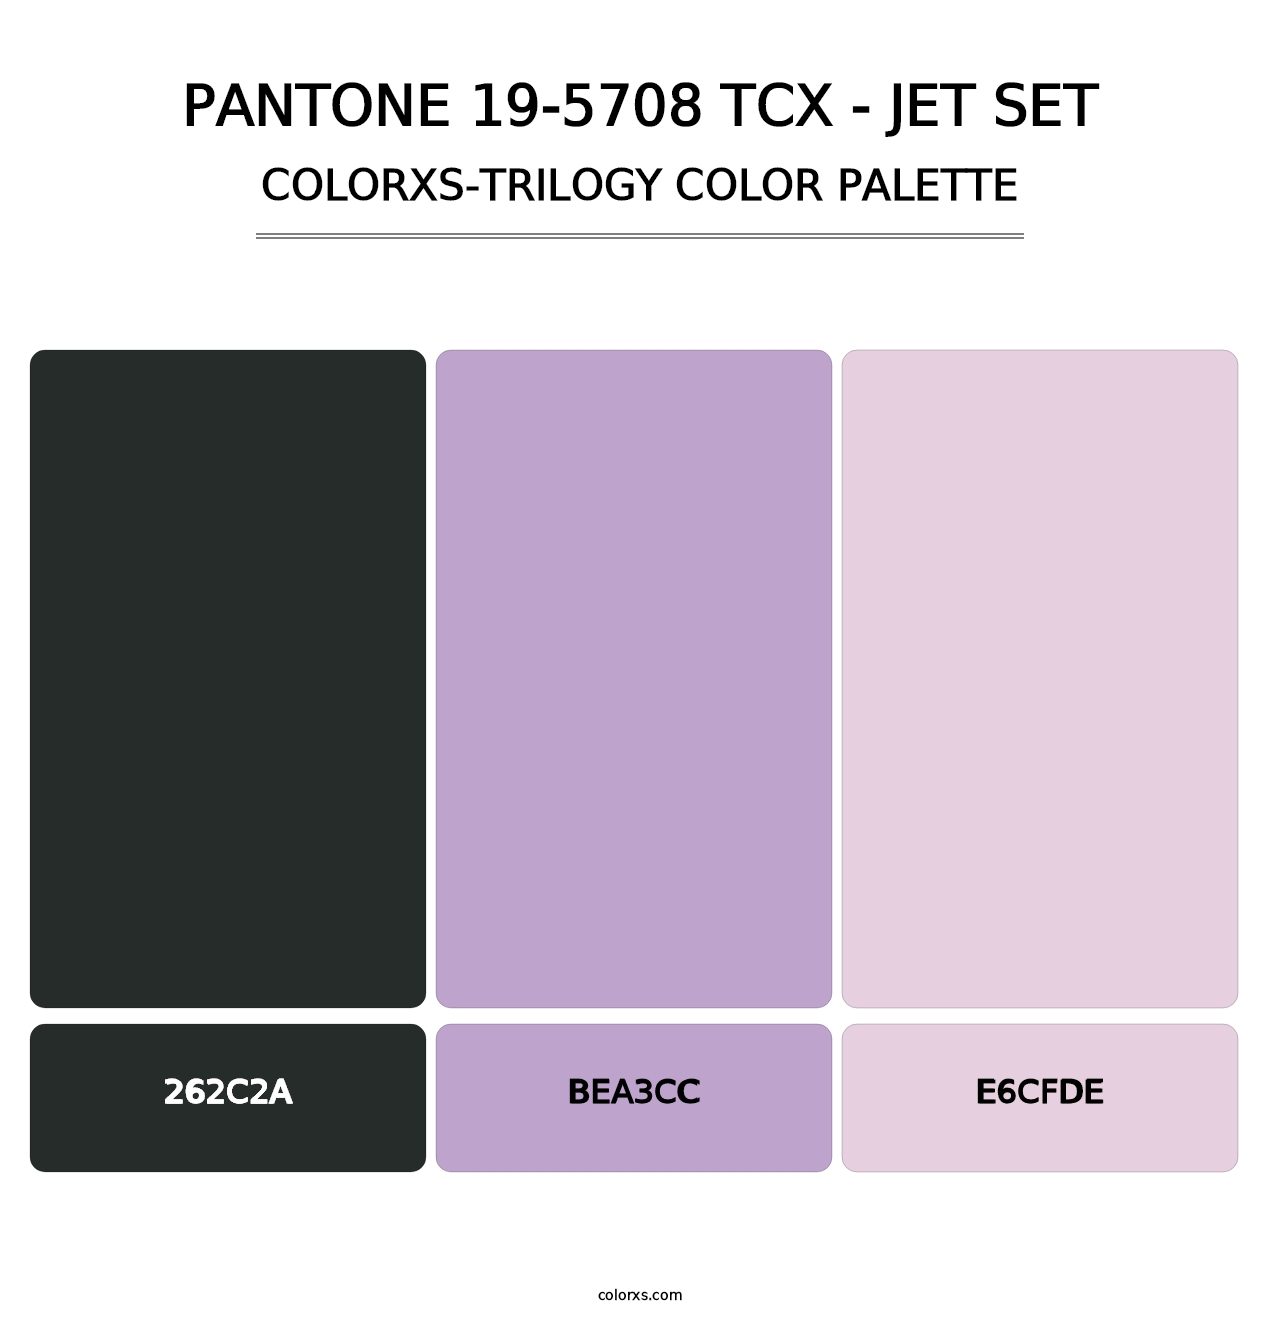 PANTONE 19-5708 TCX - Jet Set - Colorxs Trilogy Palette